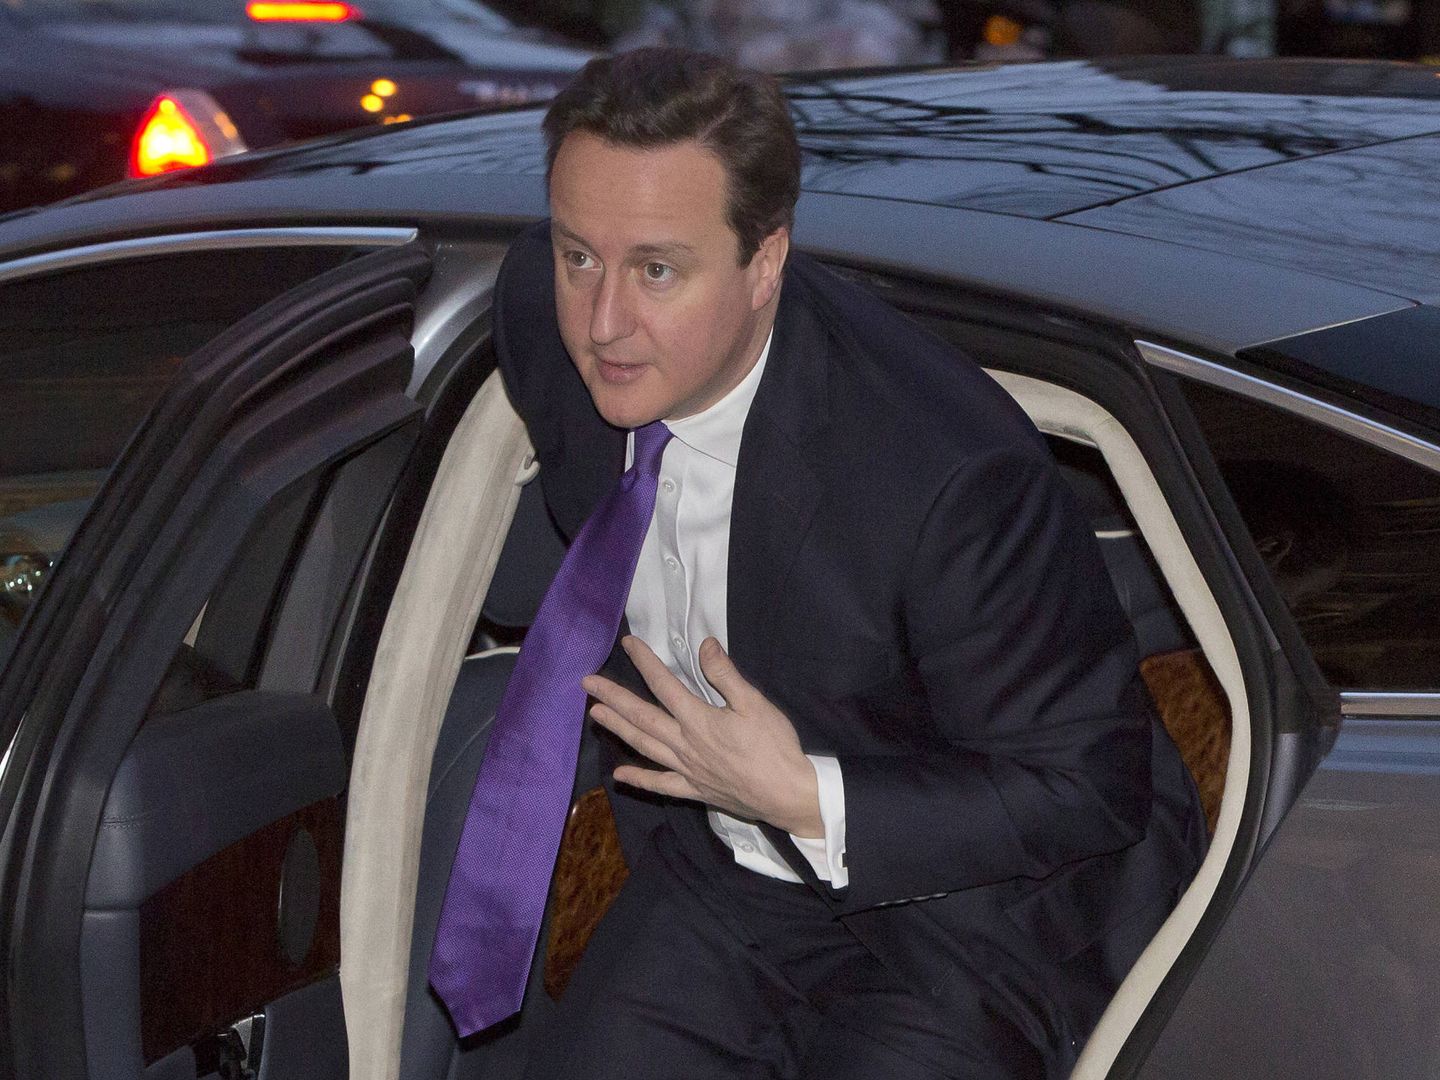 El entonces primer ministro británico David Cameron pocos minutos antes de dar el discurso en el que anuncia su promesa de celebrar un referéndum sobre la permanencia en la UE. 23 de enero de 2013. (Reuters)